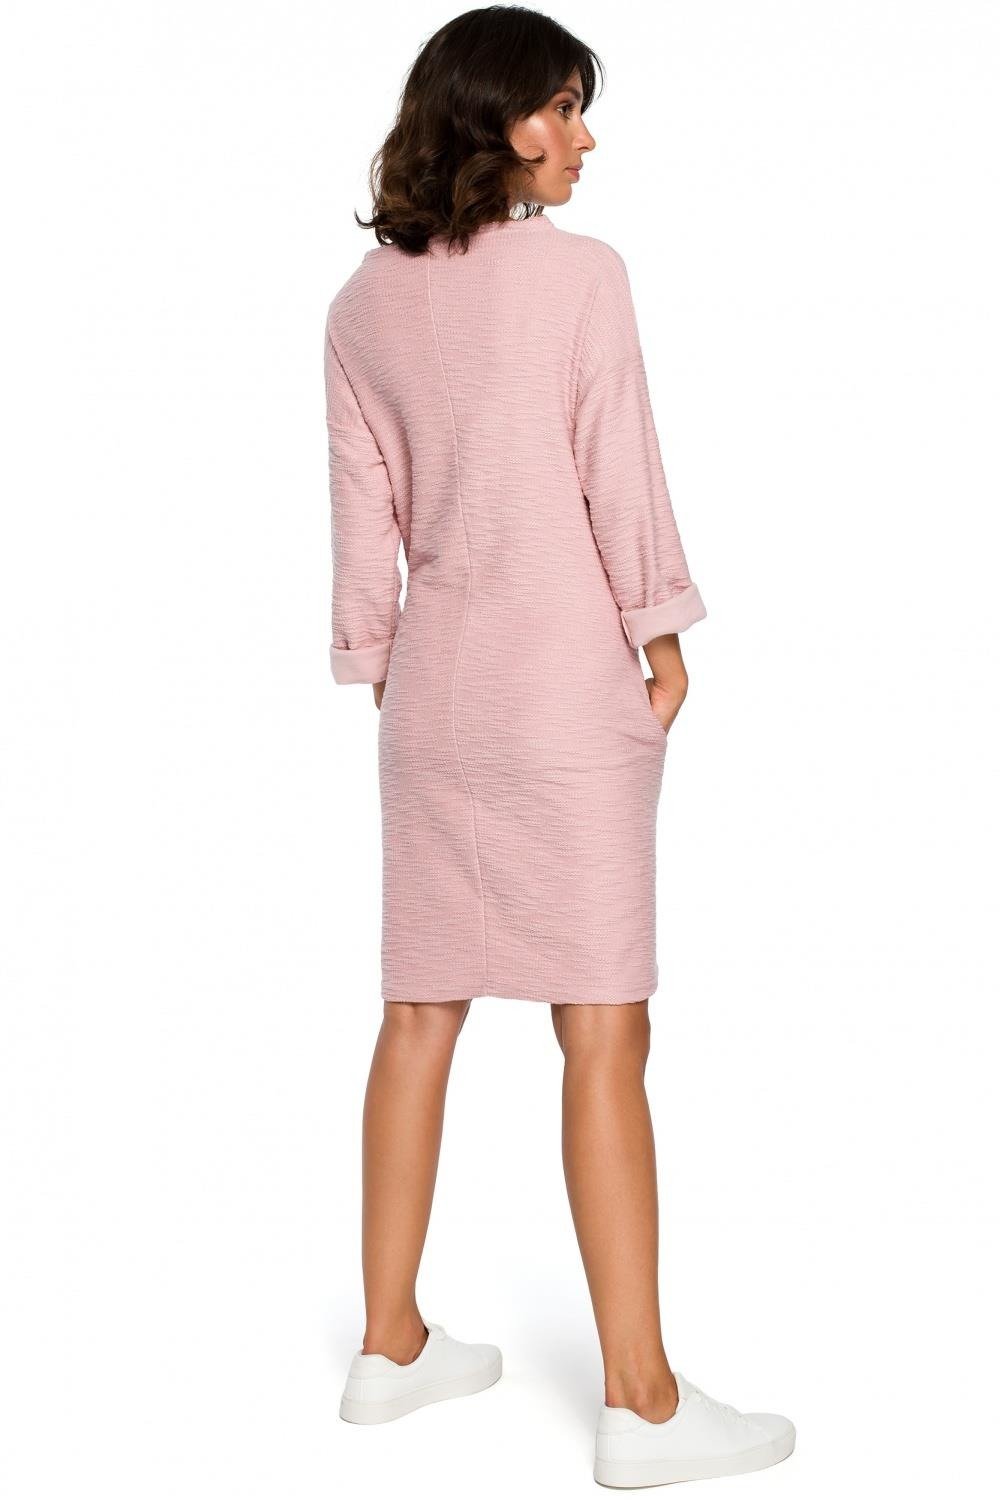 Opis: Ciepła dzianinowa sukienka z kieszeniami sportowy styl różowa bawełna.